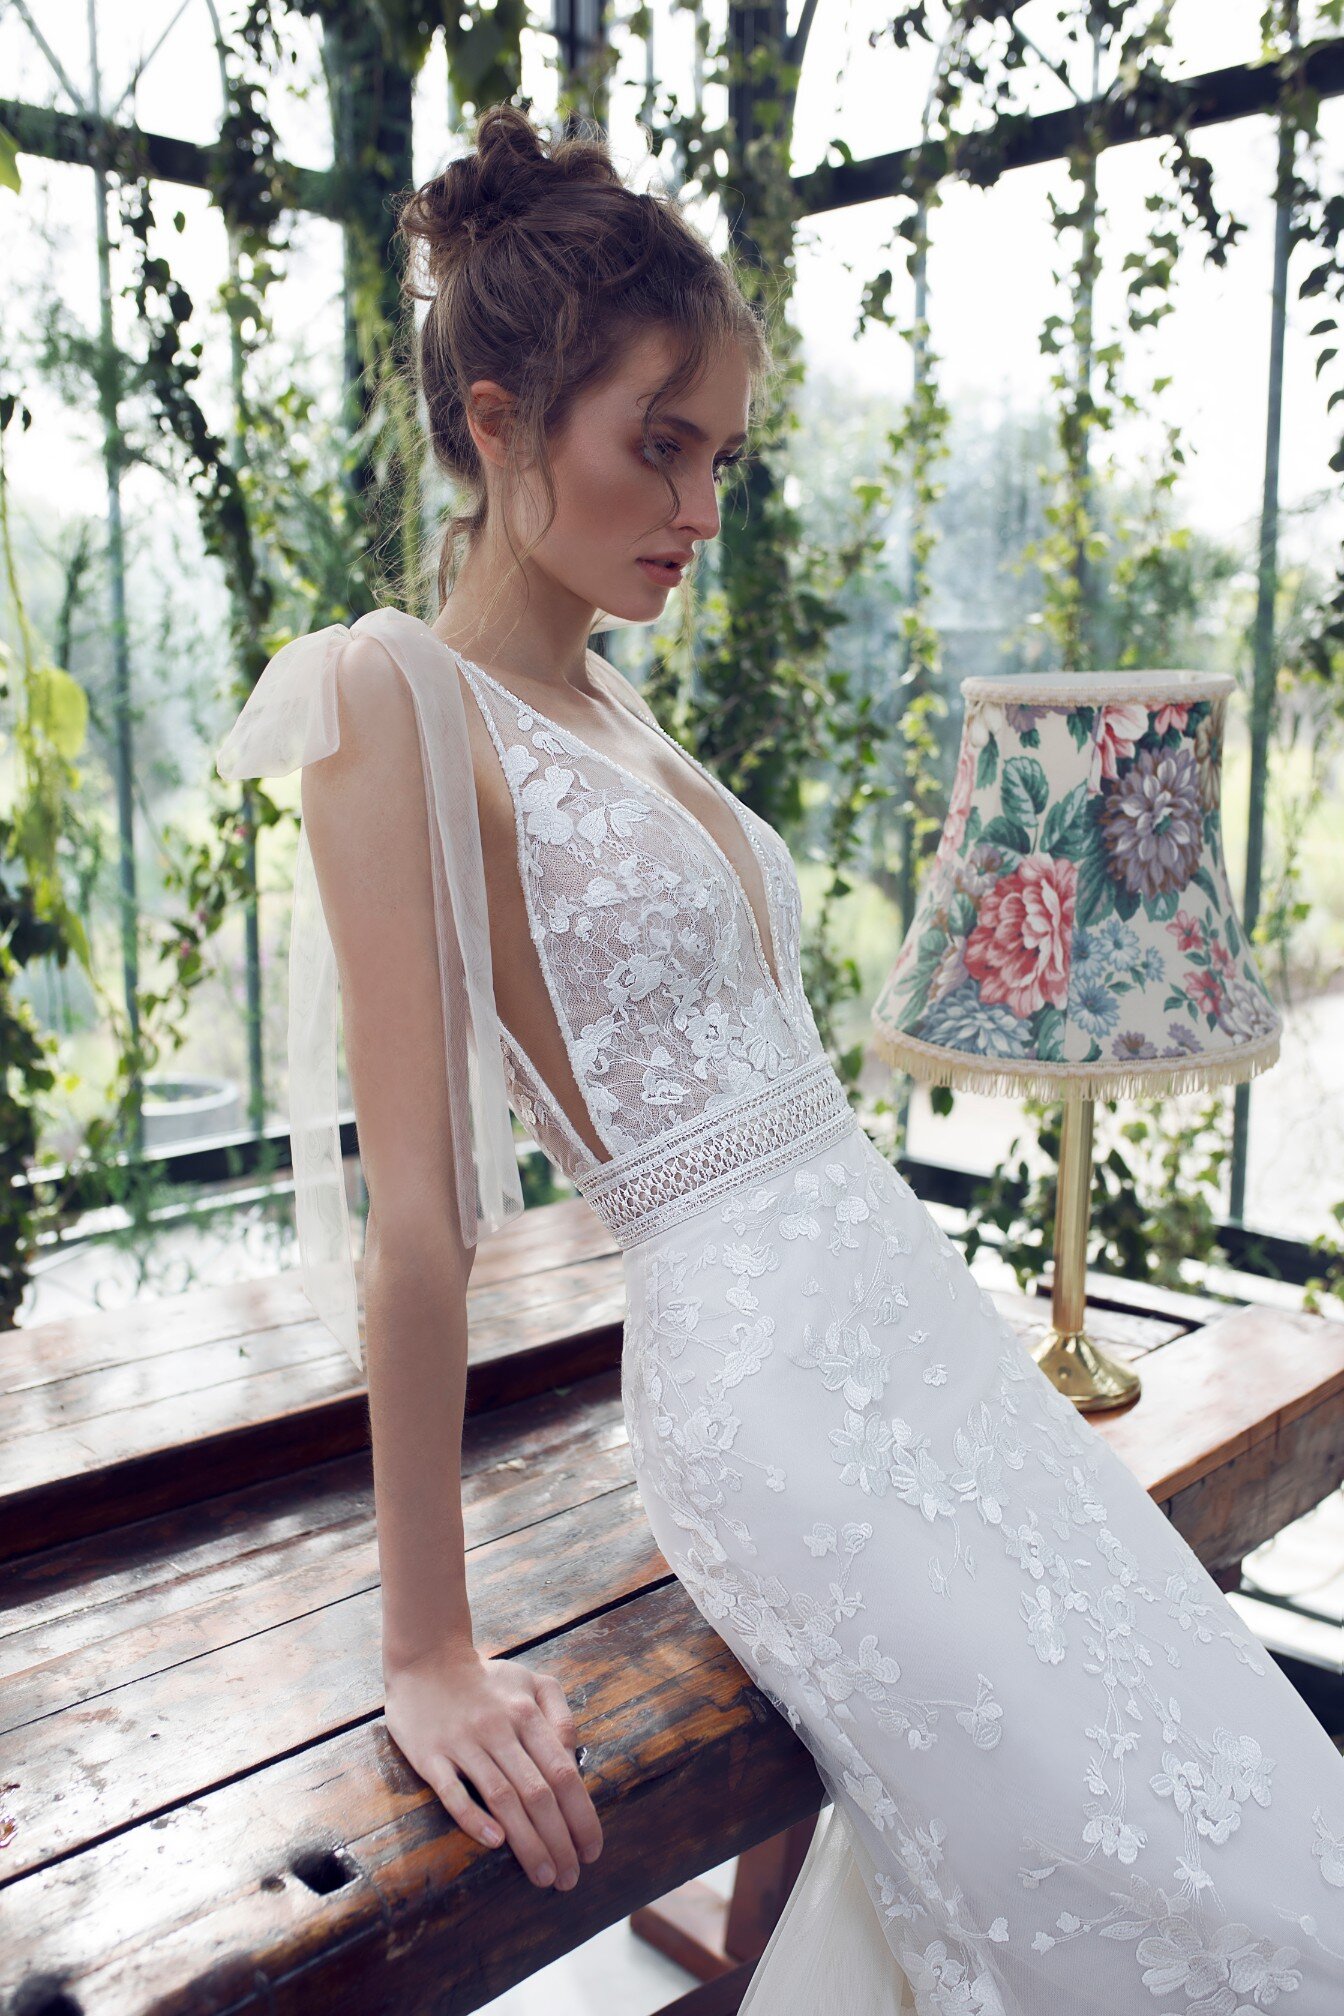 hope-xo-limor-rosen-wedding-dress.jpg